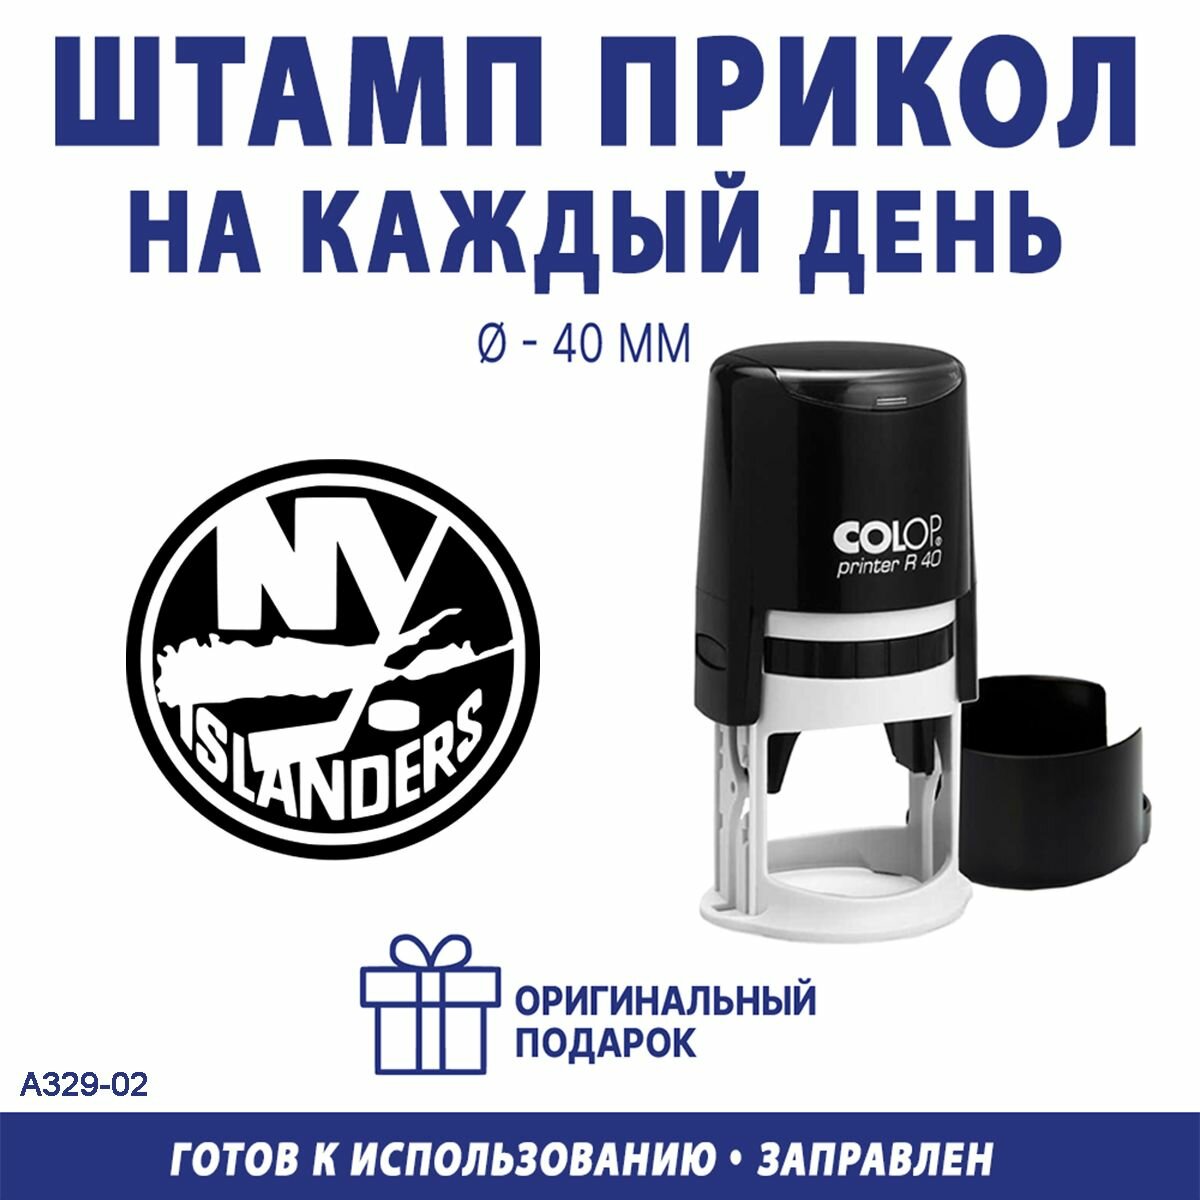 Печать с эмблемой хоккейного клуба "Нью-Йорк Айлендерс"